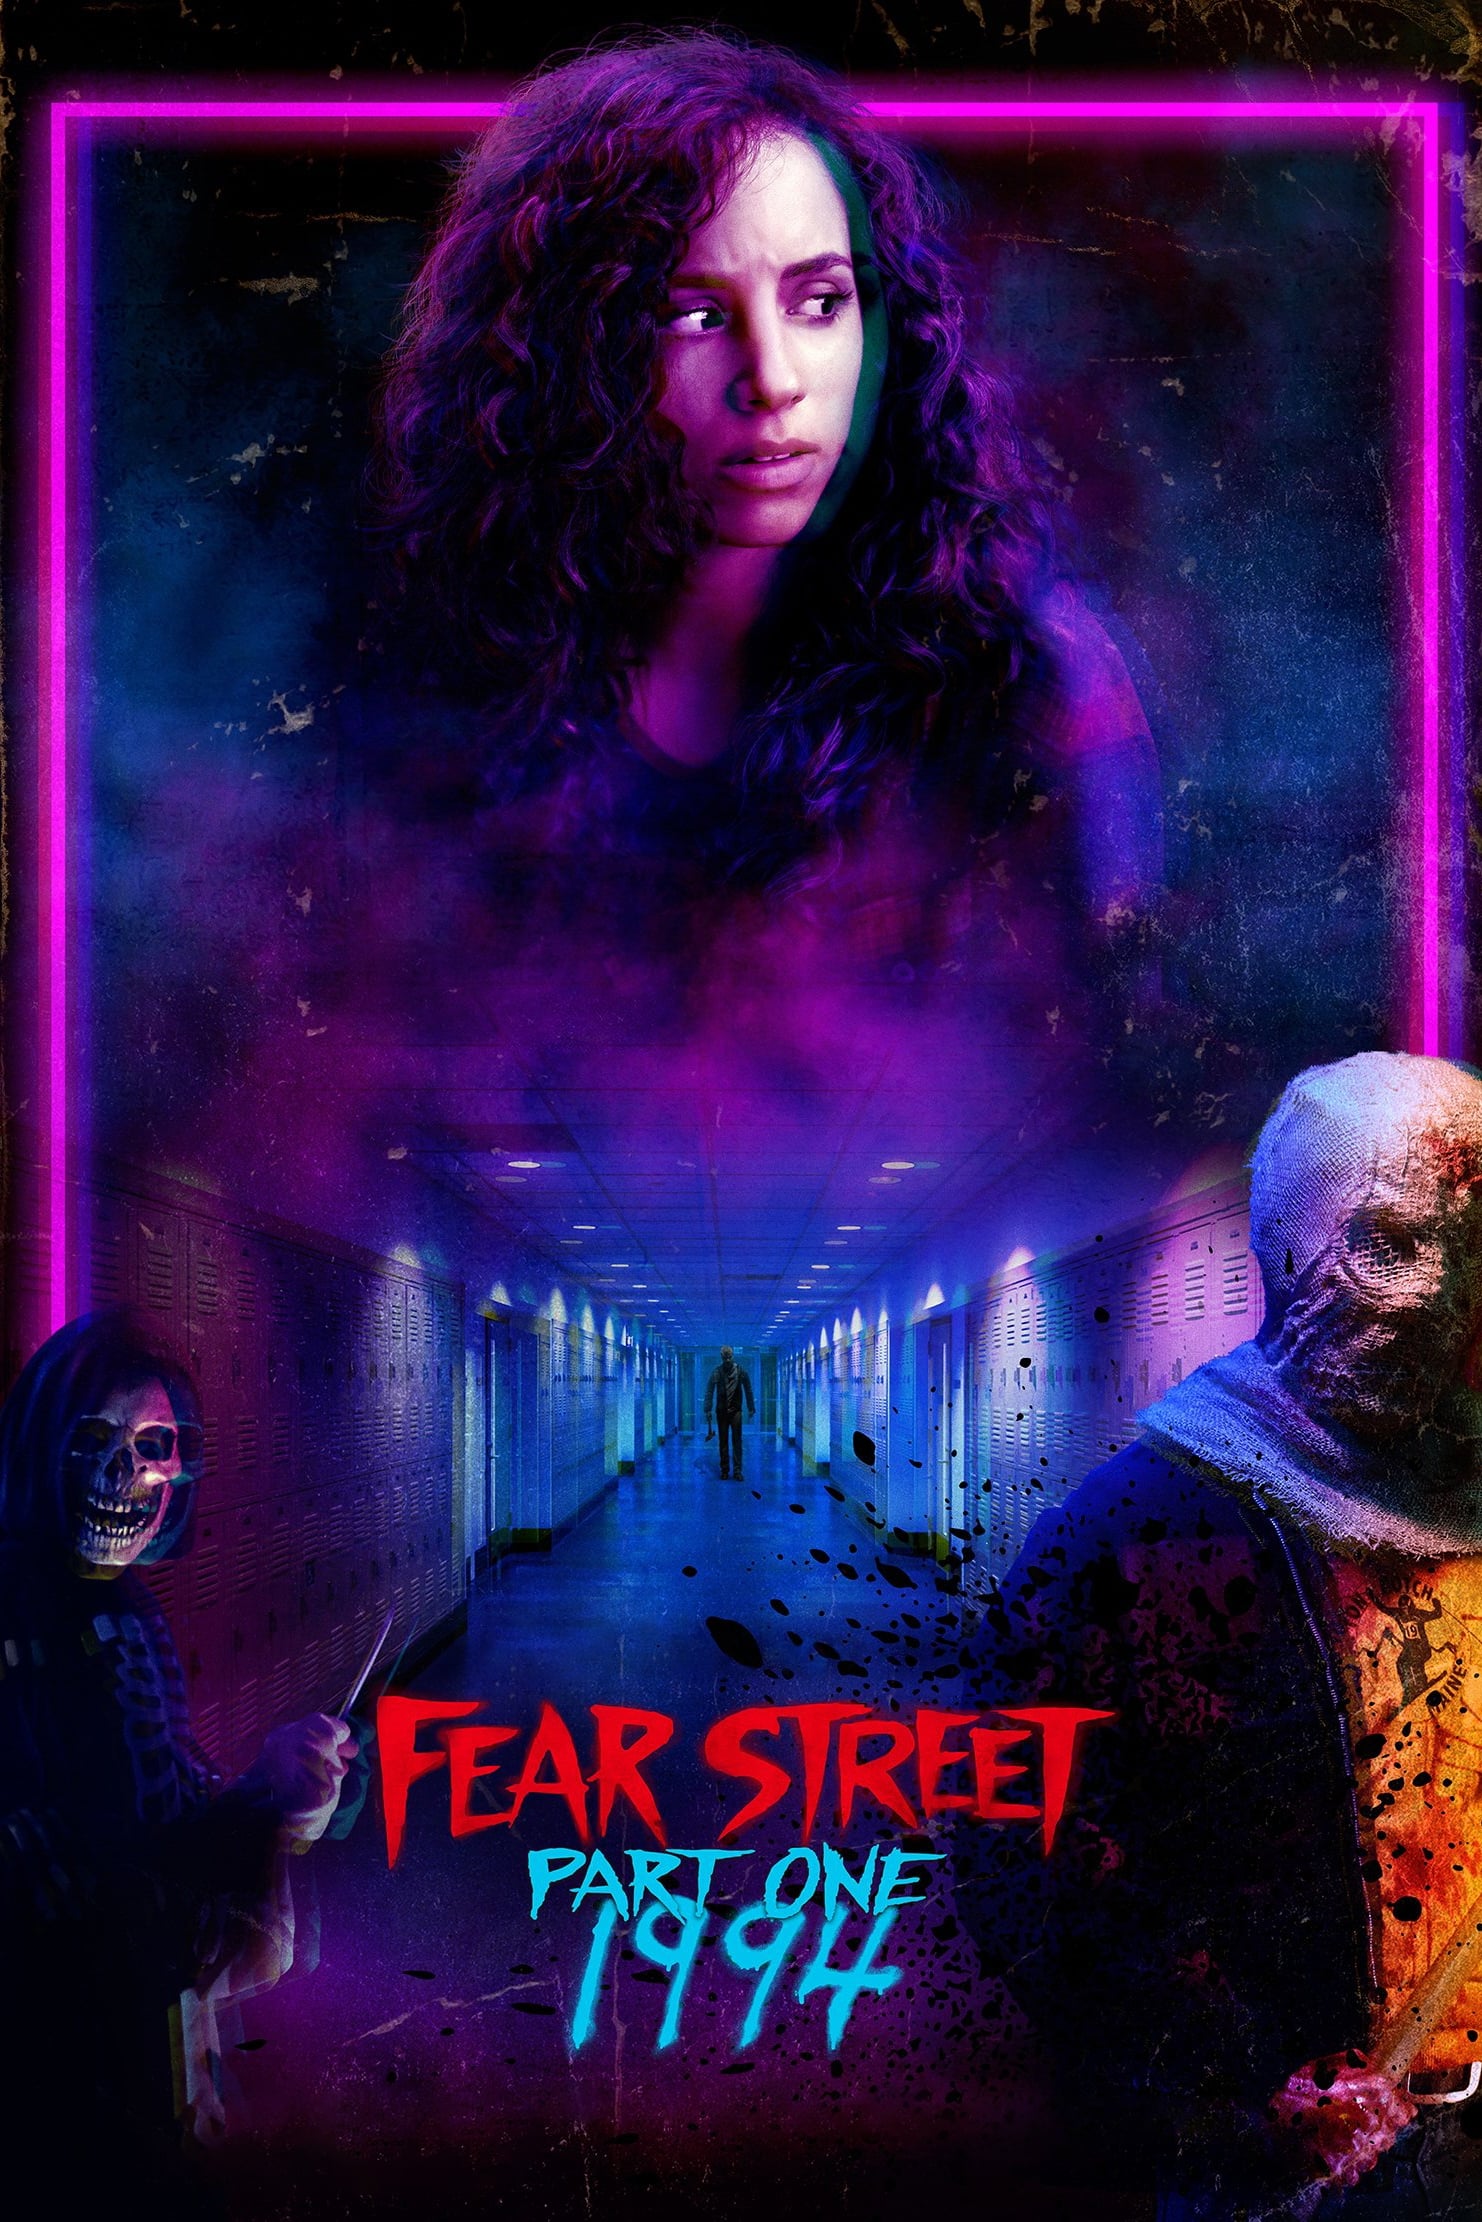 Fear Street Partie 1 : 1994